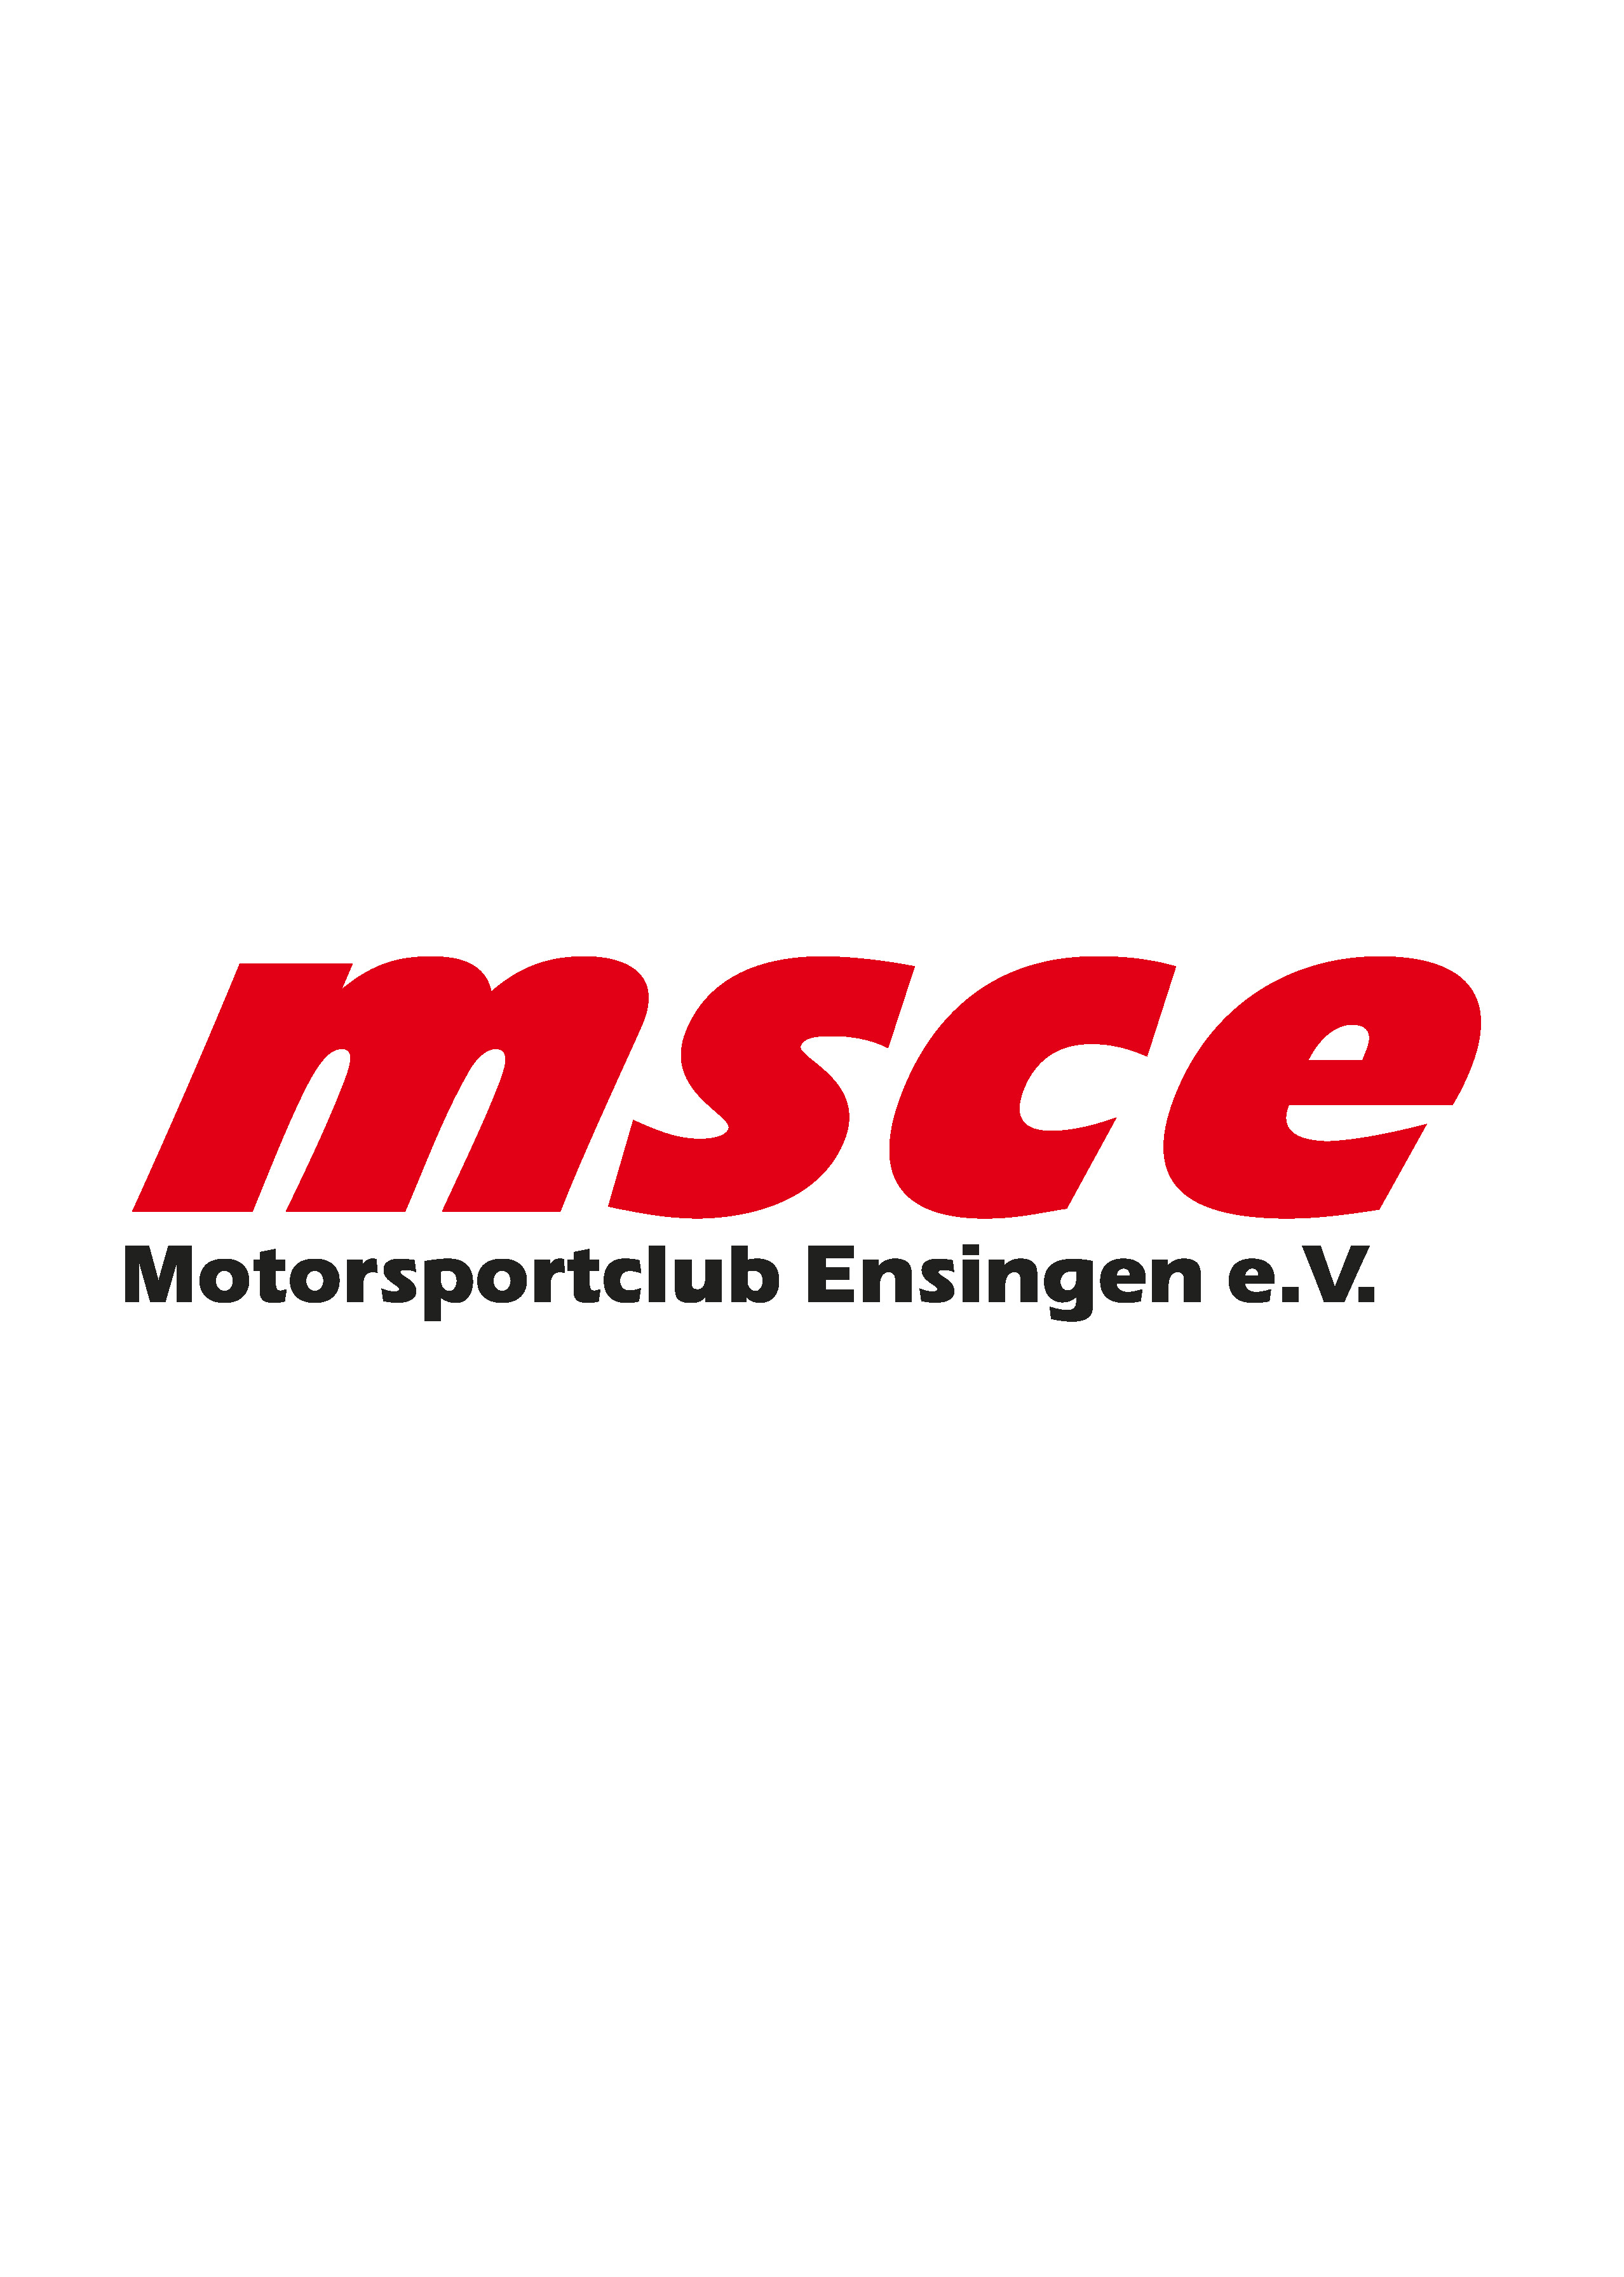 Motorsportclub Ensingen e. V. (MSCE)